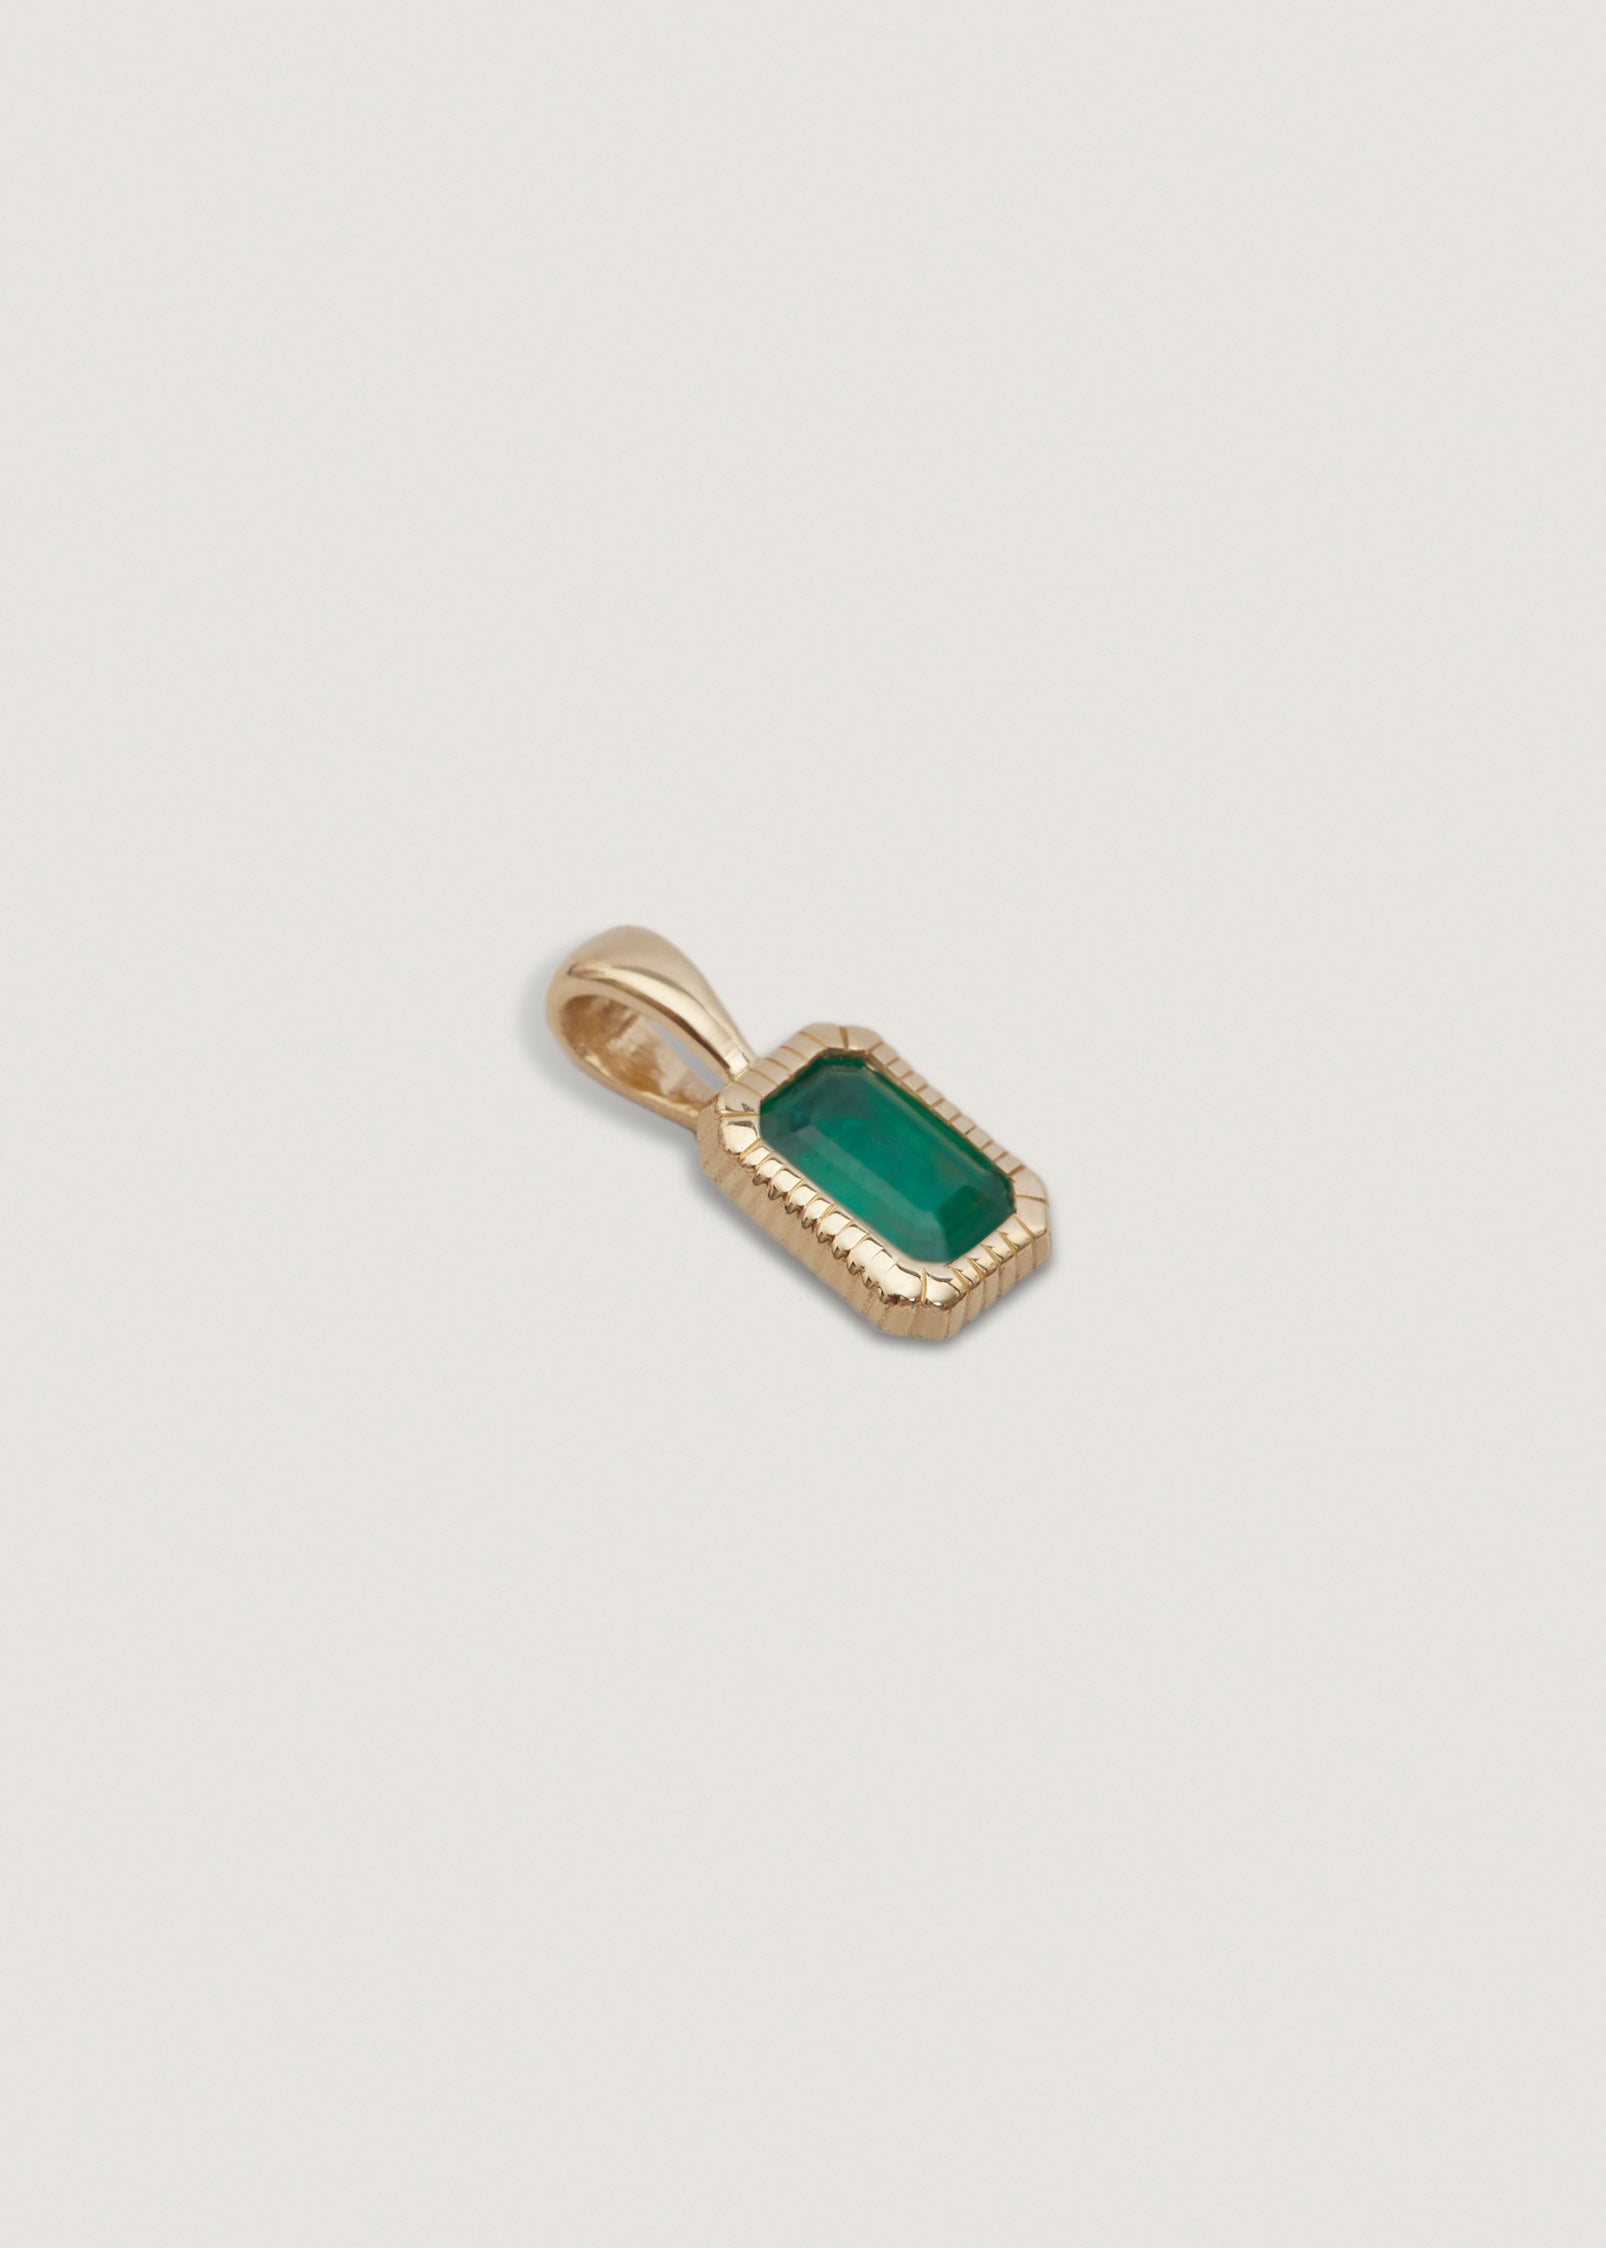 alt="Lyra Baguette Pendant II - Emerald"